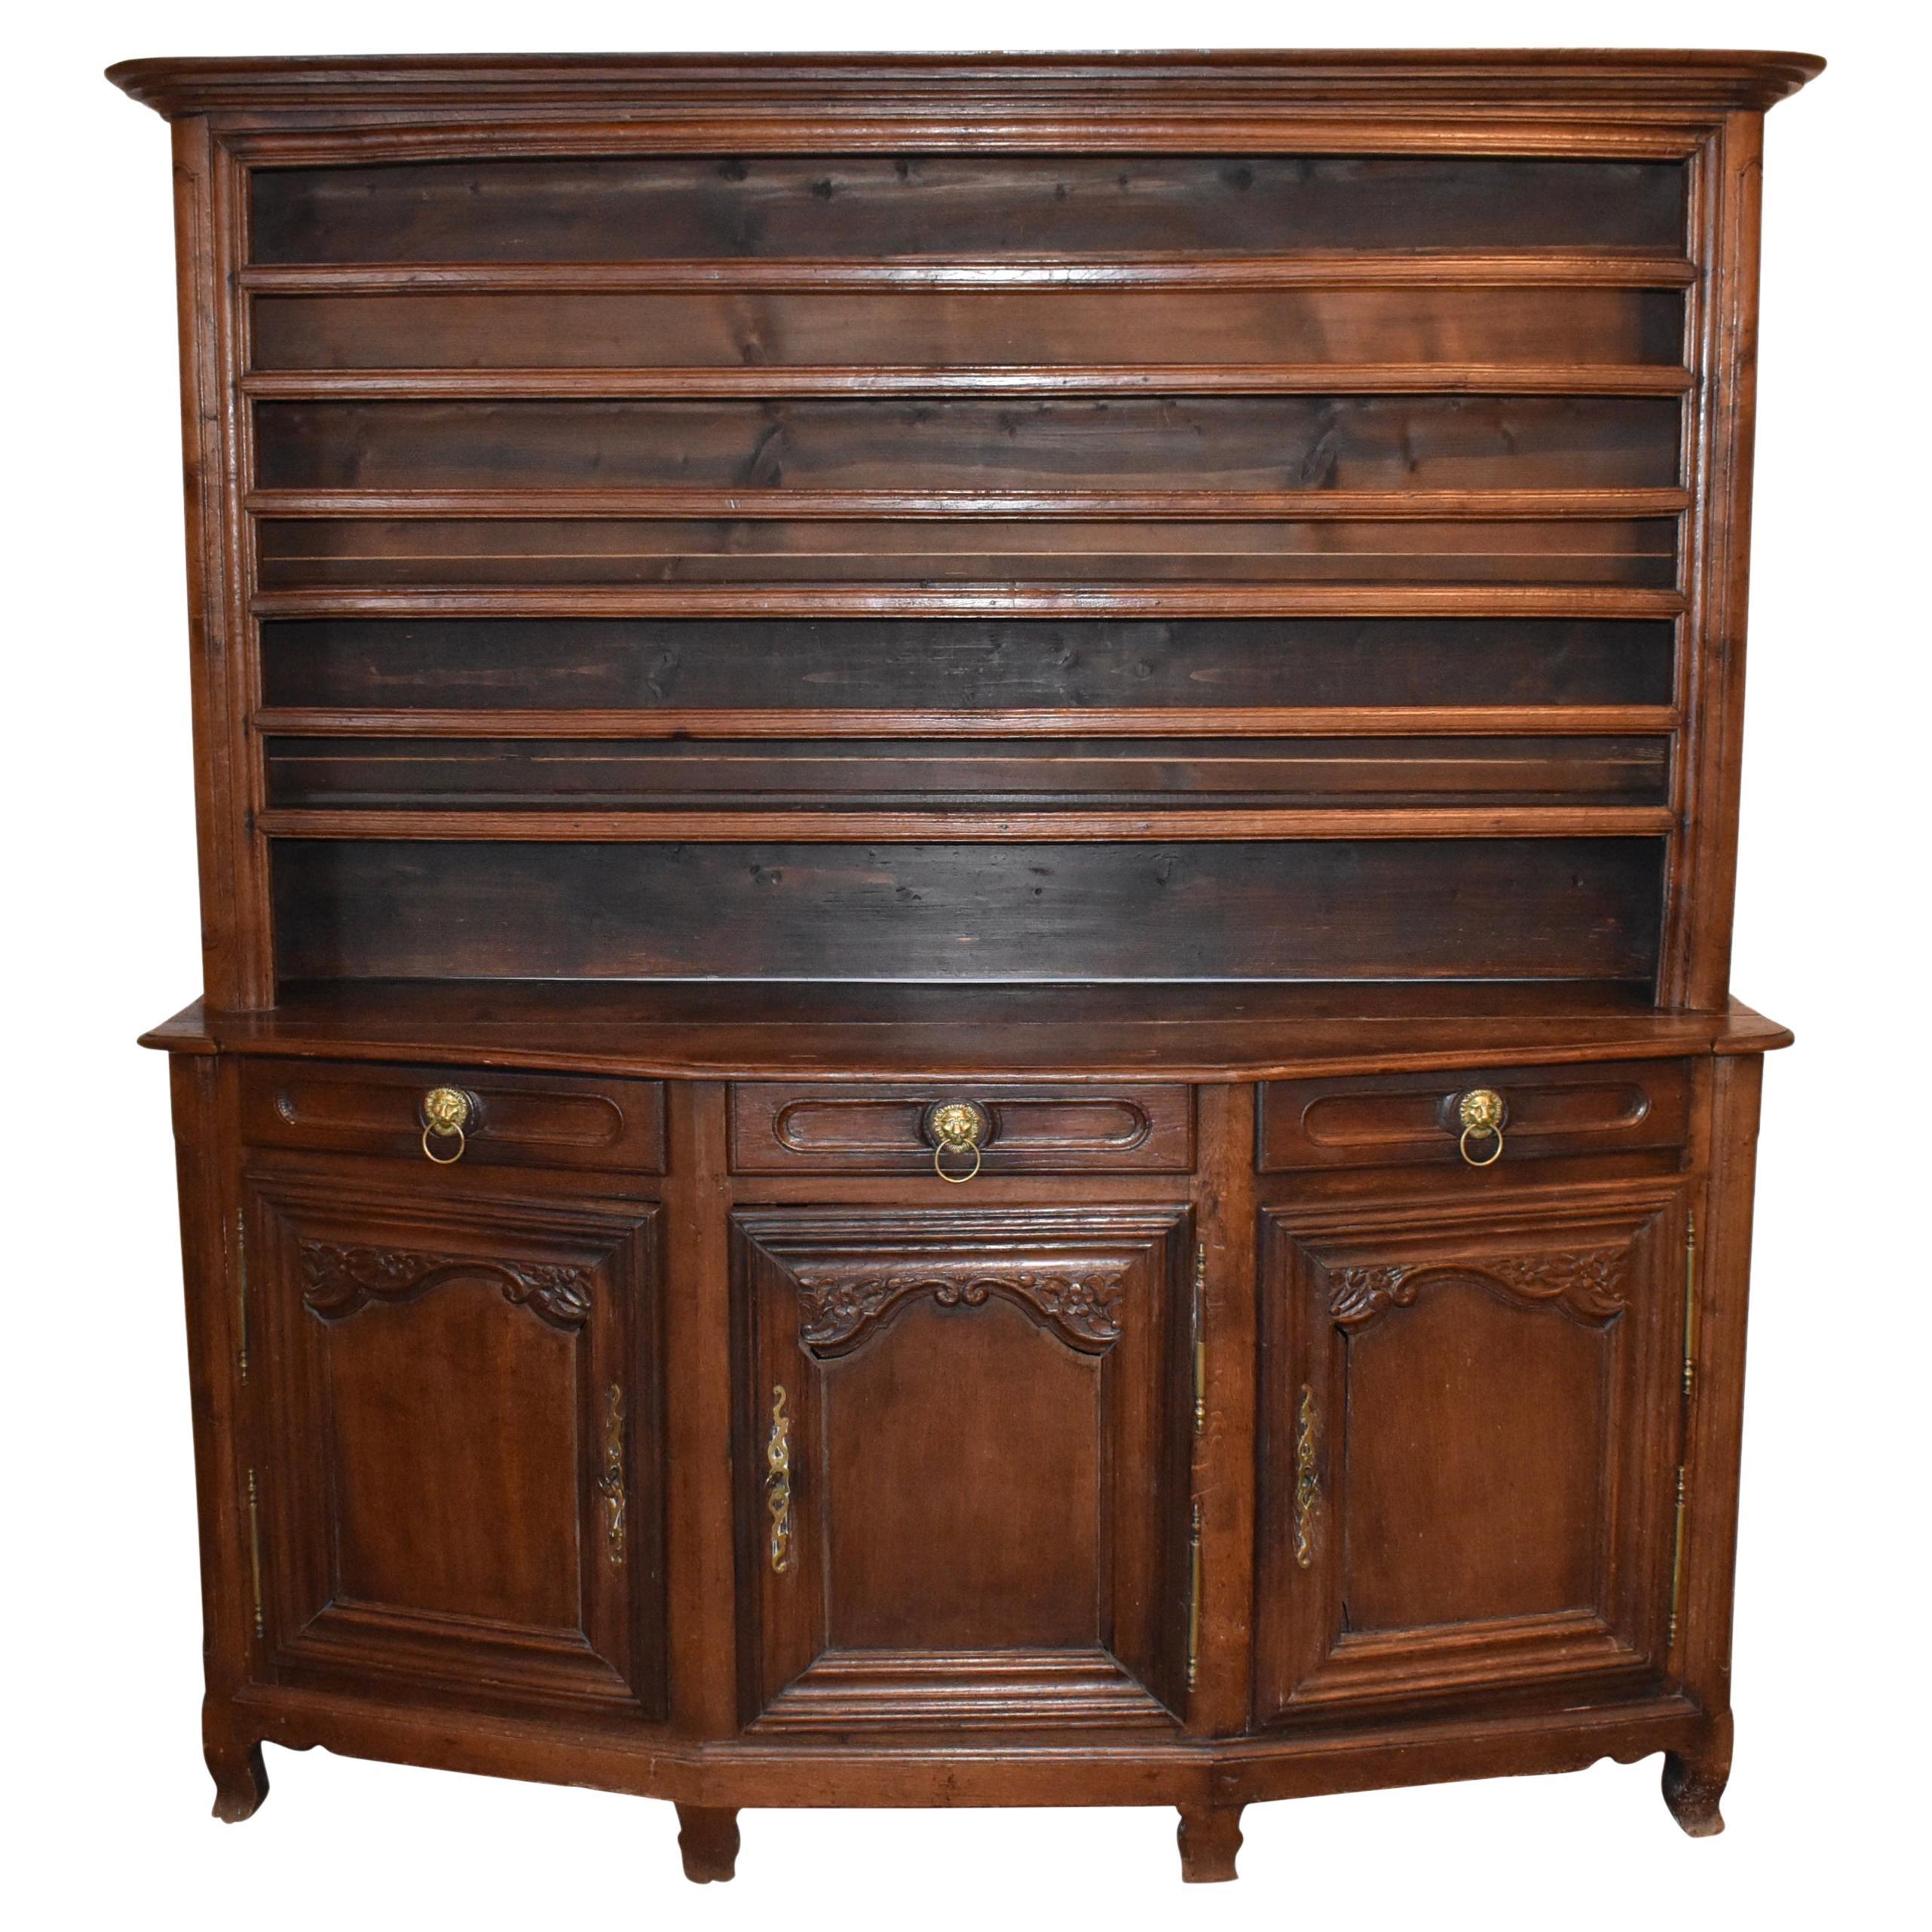 Rustic Oak Plate Cupboard Cabinet, circa 1875